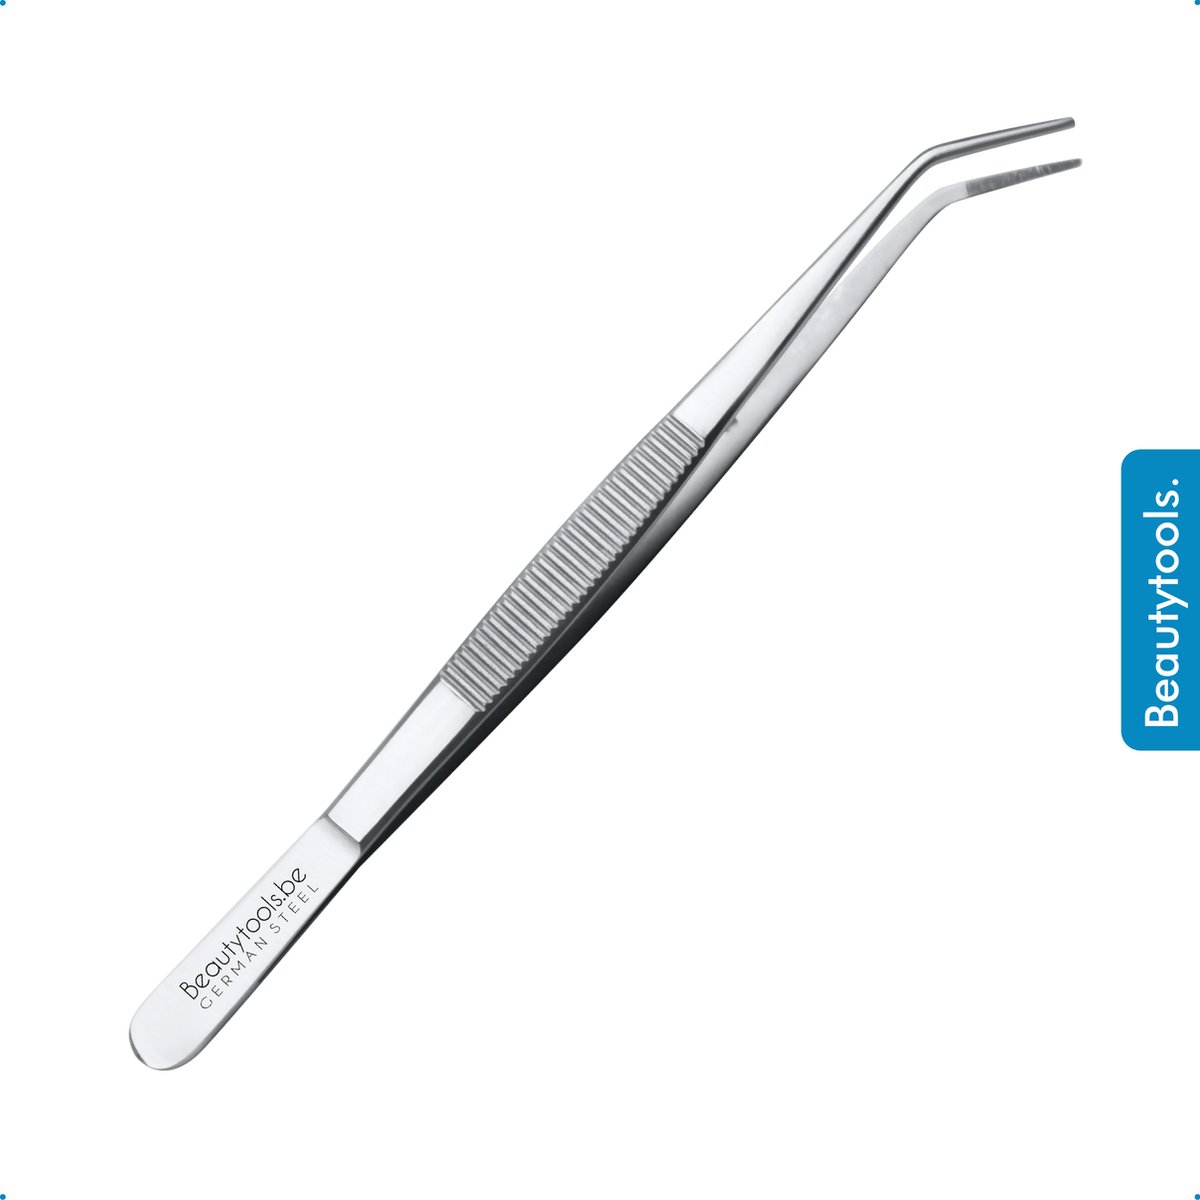 BeautyTools Punt Pincet SOLID-GRIP - Pincet met Microvertanding Voor Splinters en Hobby - Kromme Bek - Tweezers (16 cm) - Inox (PT-2083)